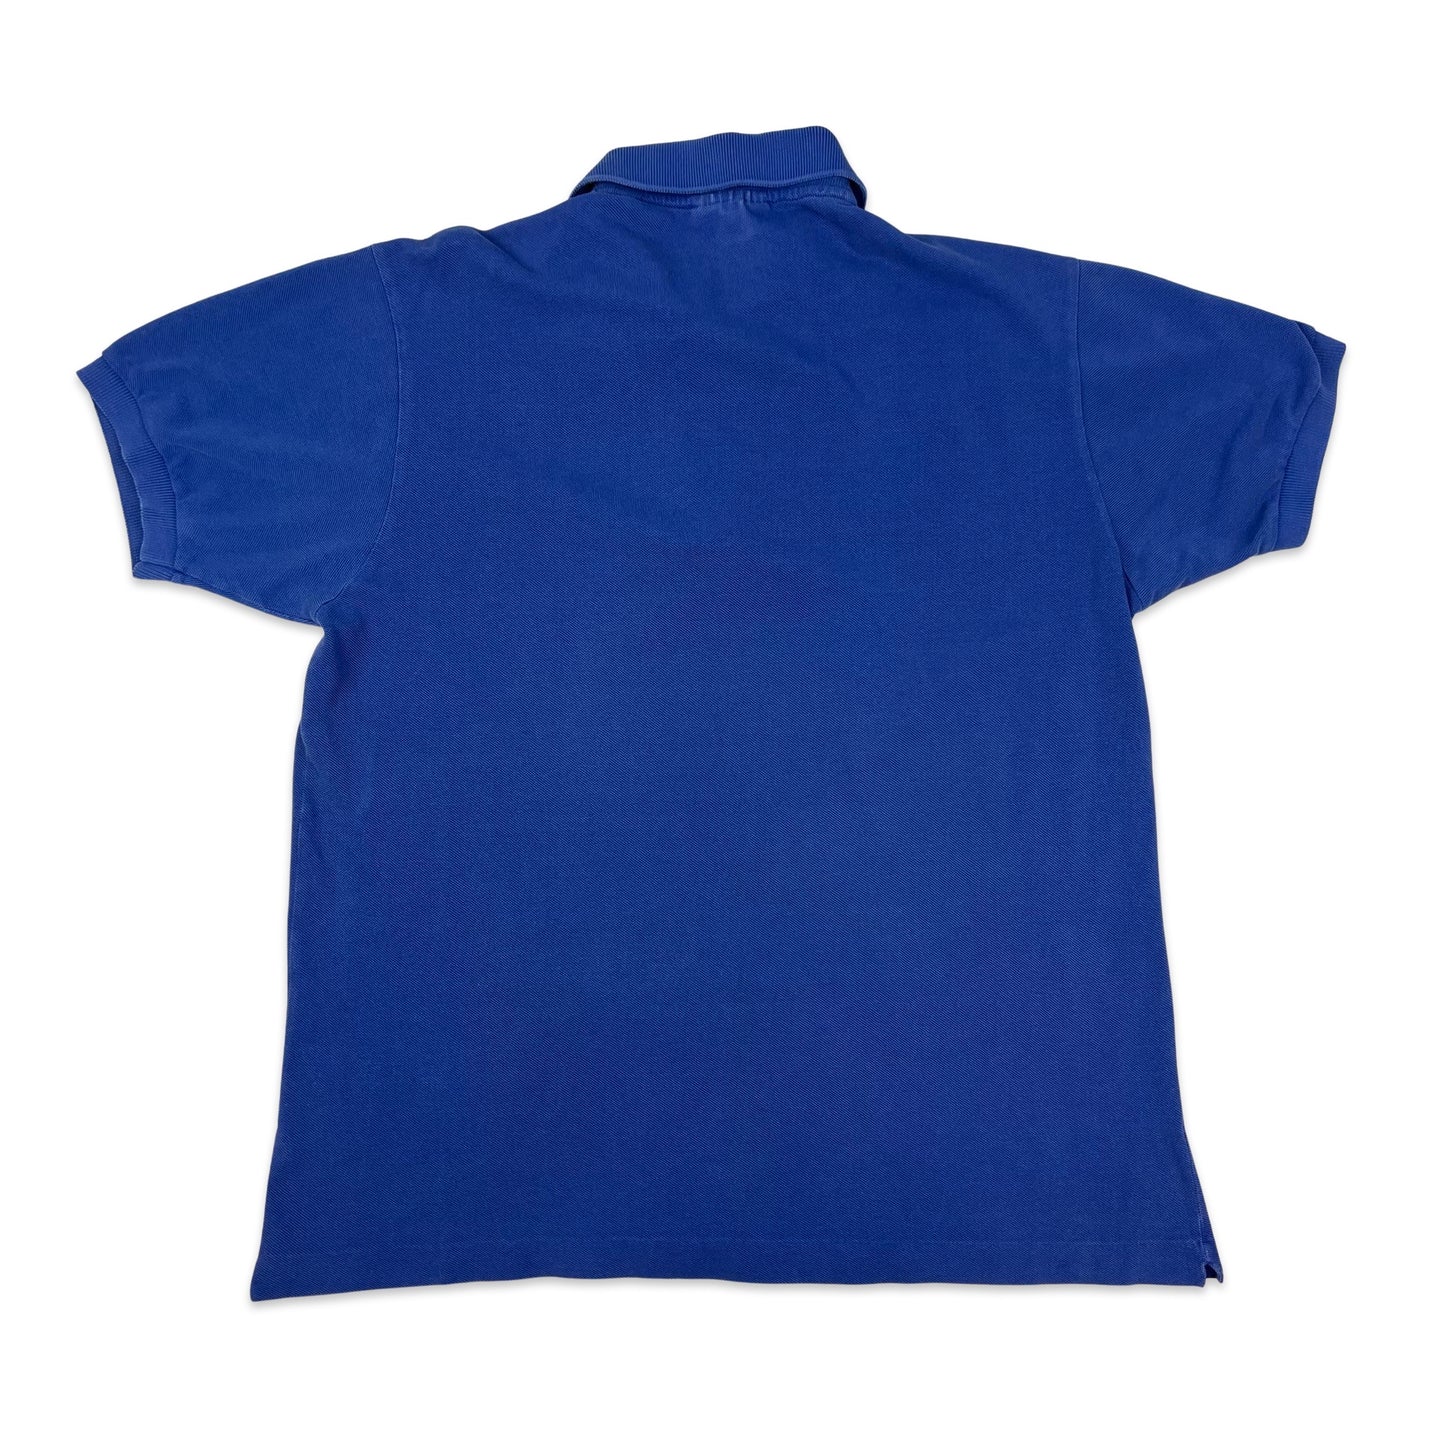 Vintage 80s Chemise Lacoste Blue Polo Shirt S M